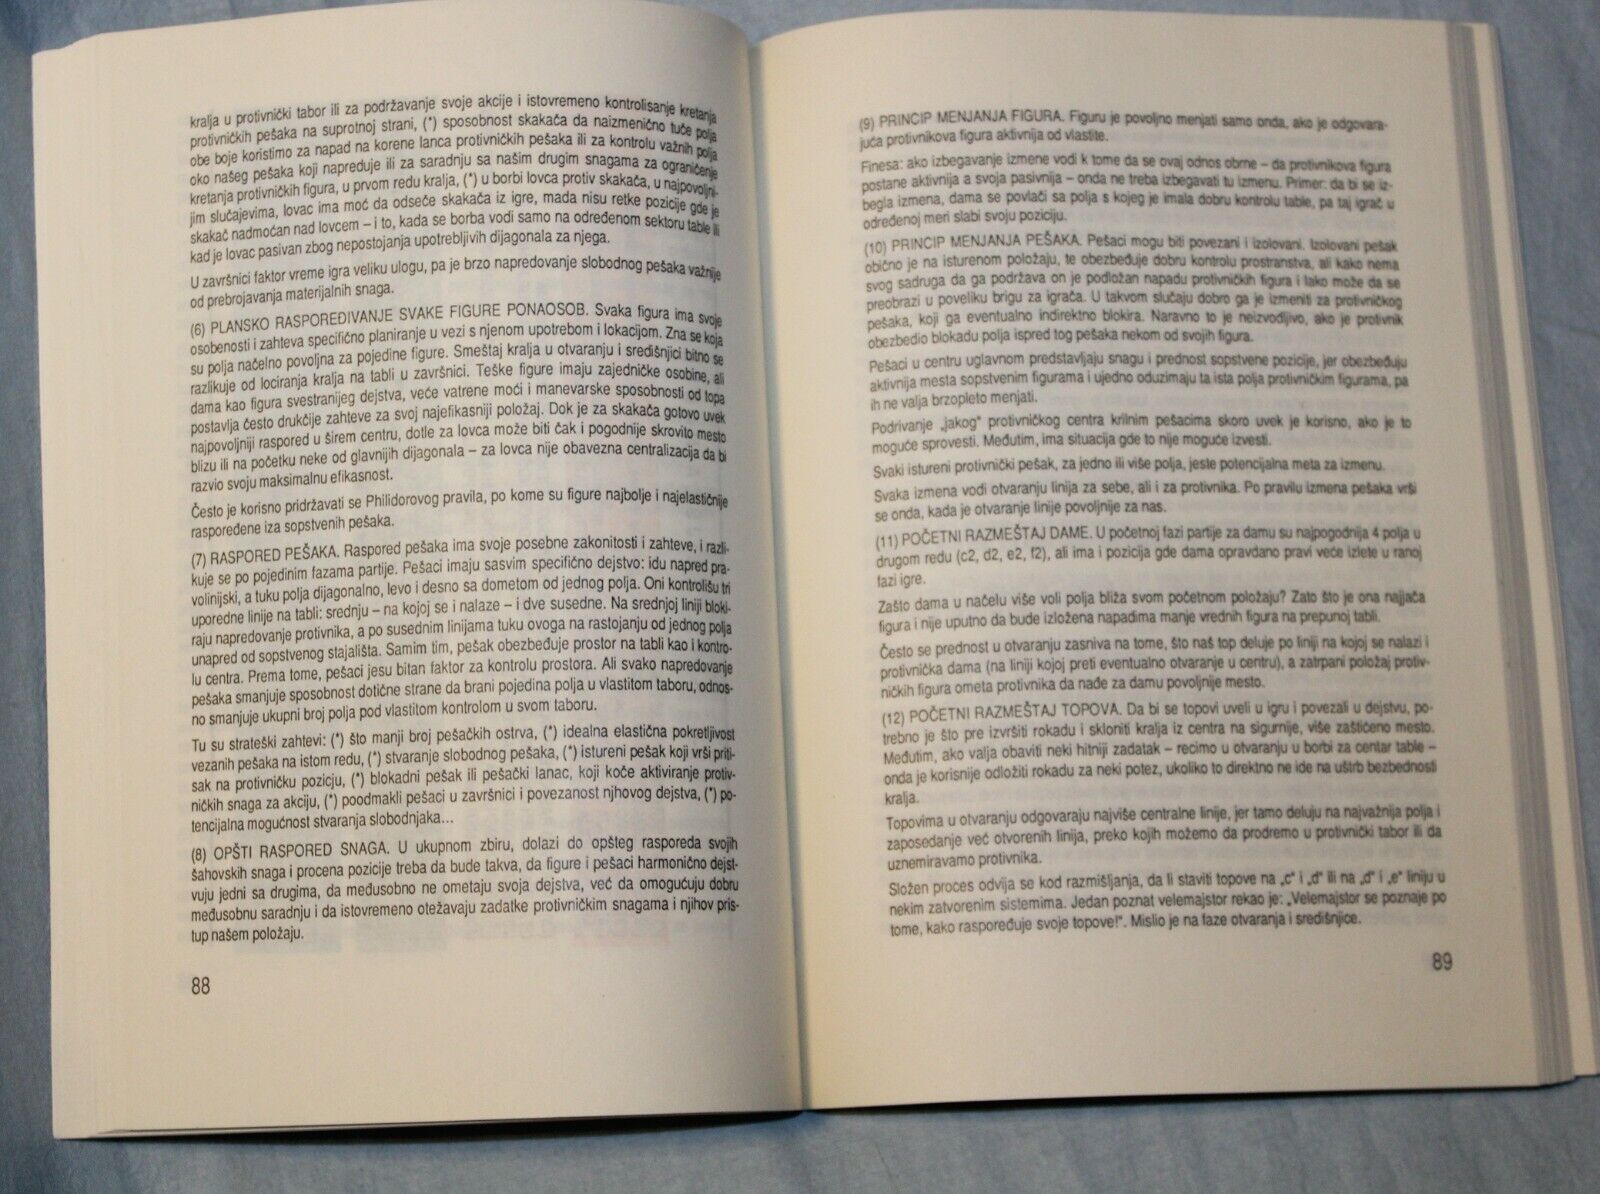 11151.Chess Documents: Sahovski Vodic Vol 1 Serbian and Karpov’s Letter 1988 and 1994